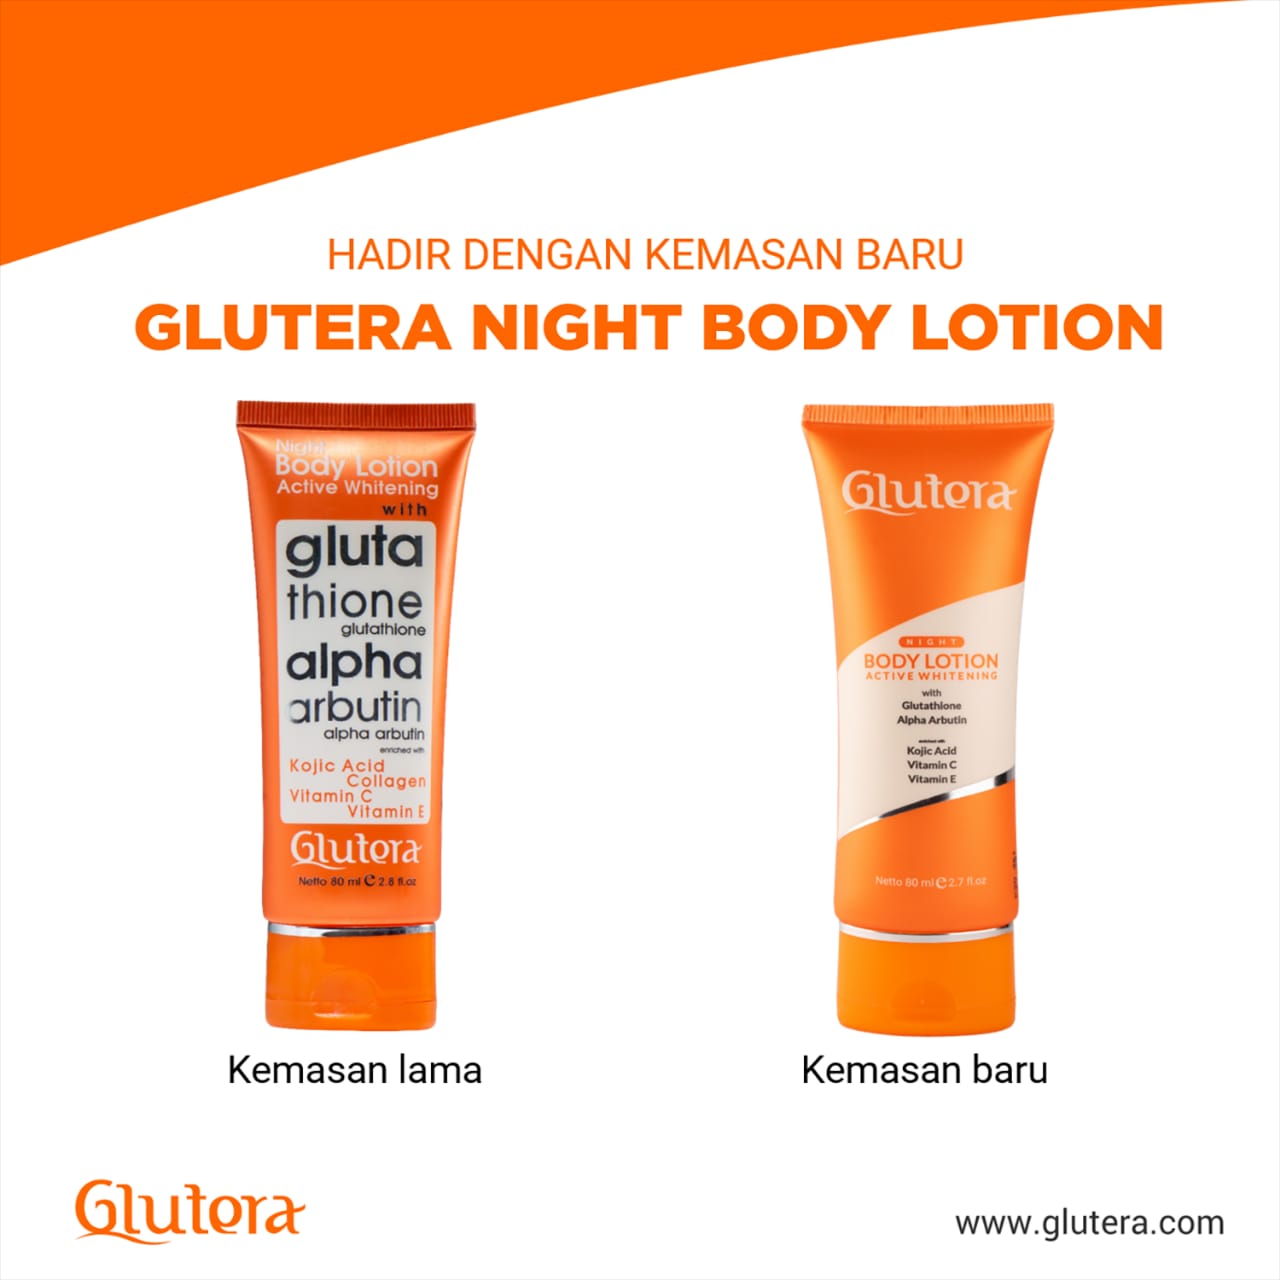 Glutera Night Body Lotion a